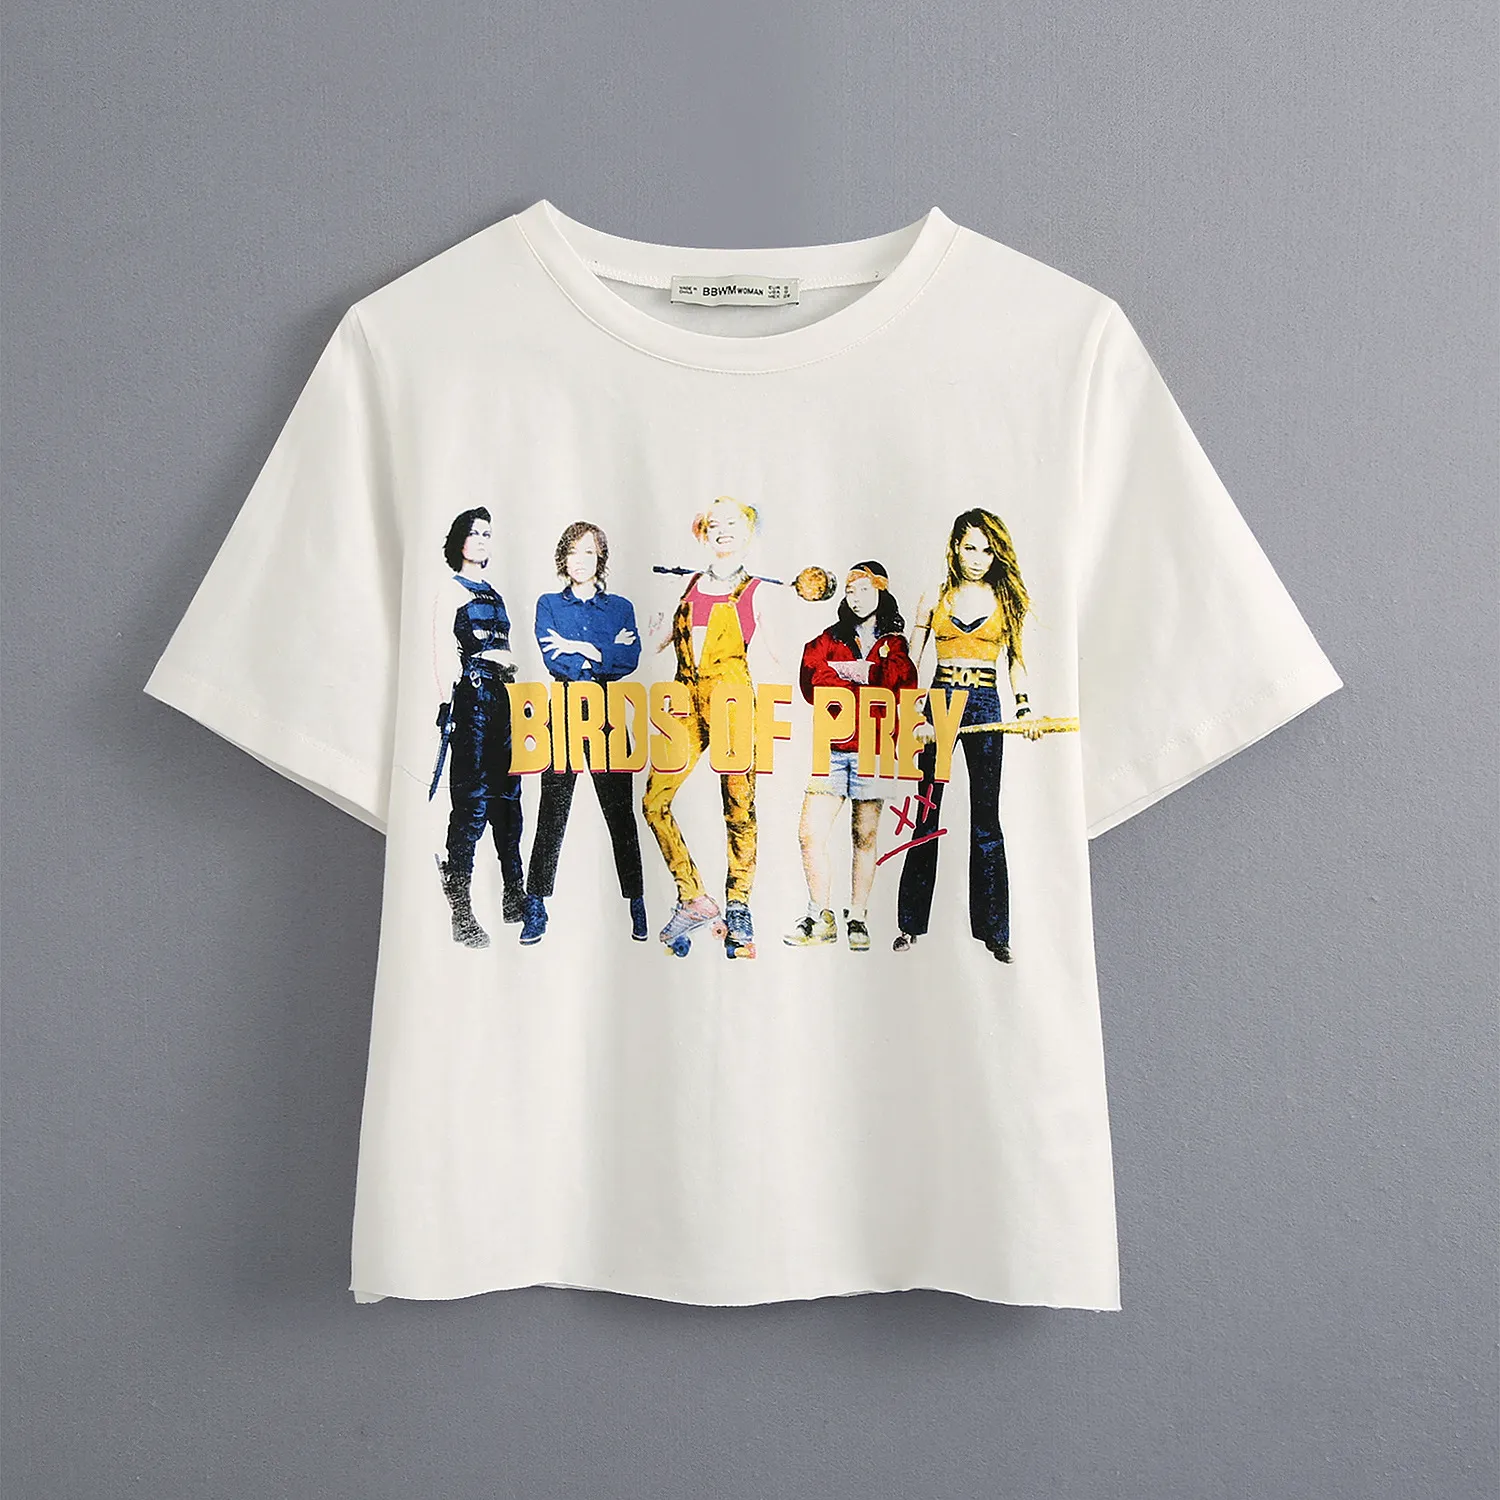 Le donne delle magliette del cotone bianco Ffigure lettera stampata Maglietta 2020 di estate di modo casuale T-shirt Streetwear Tees Top manica corta camicette